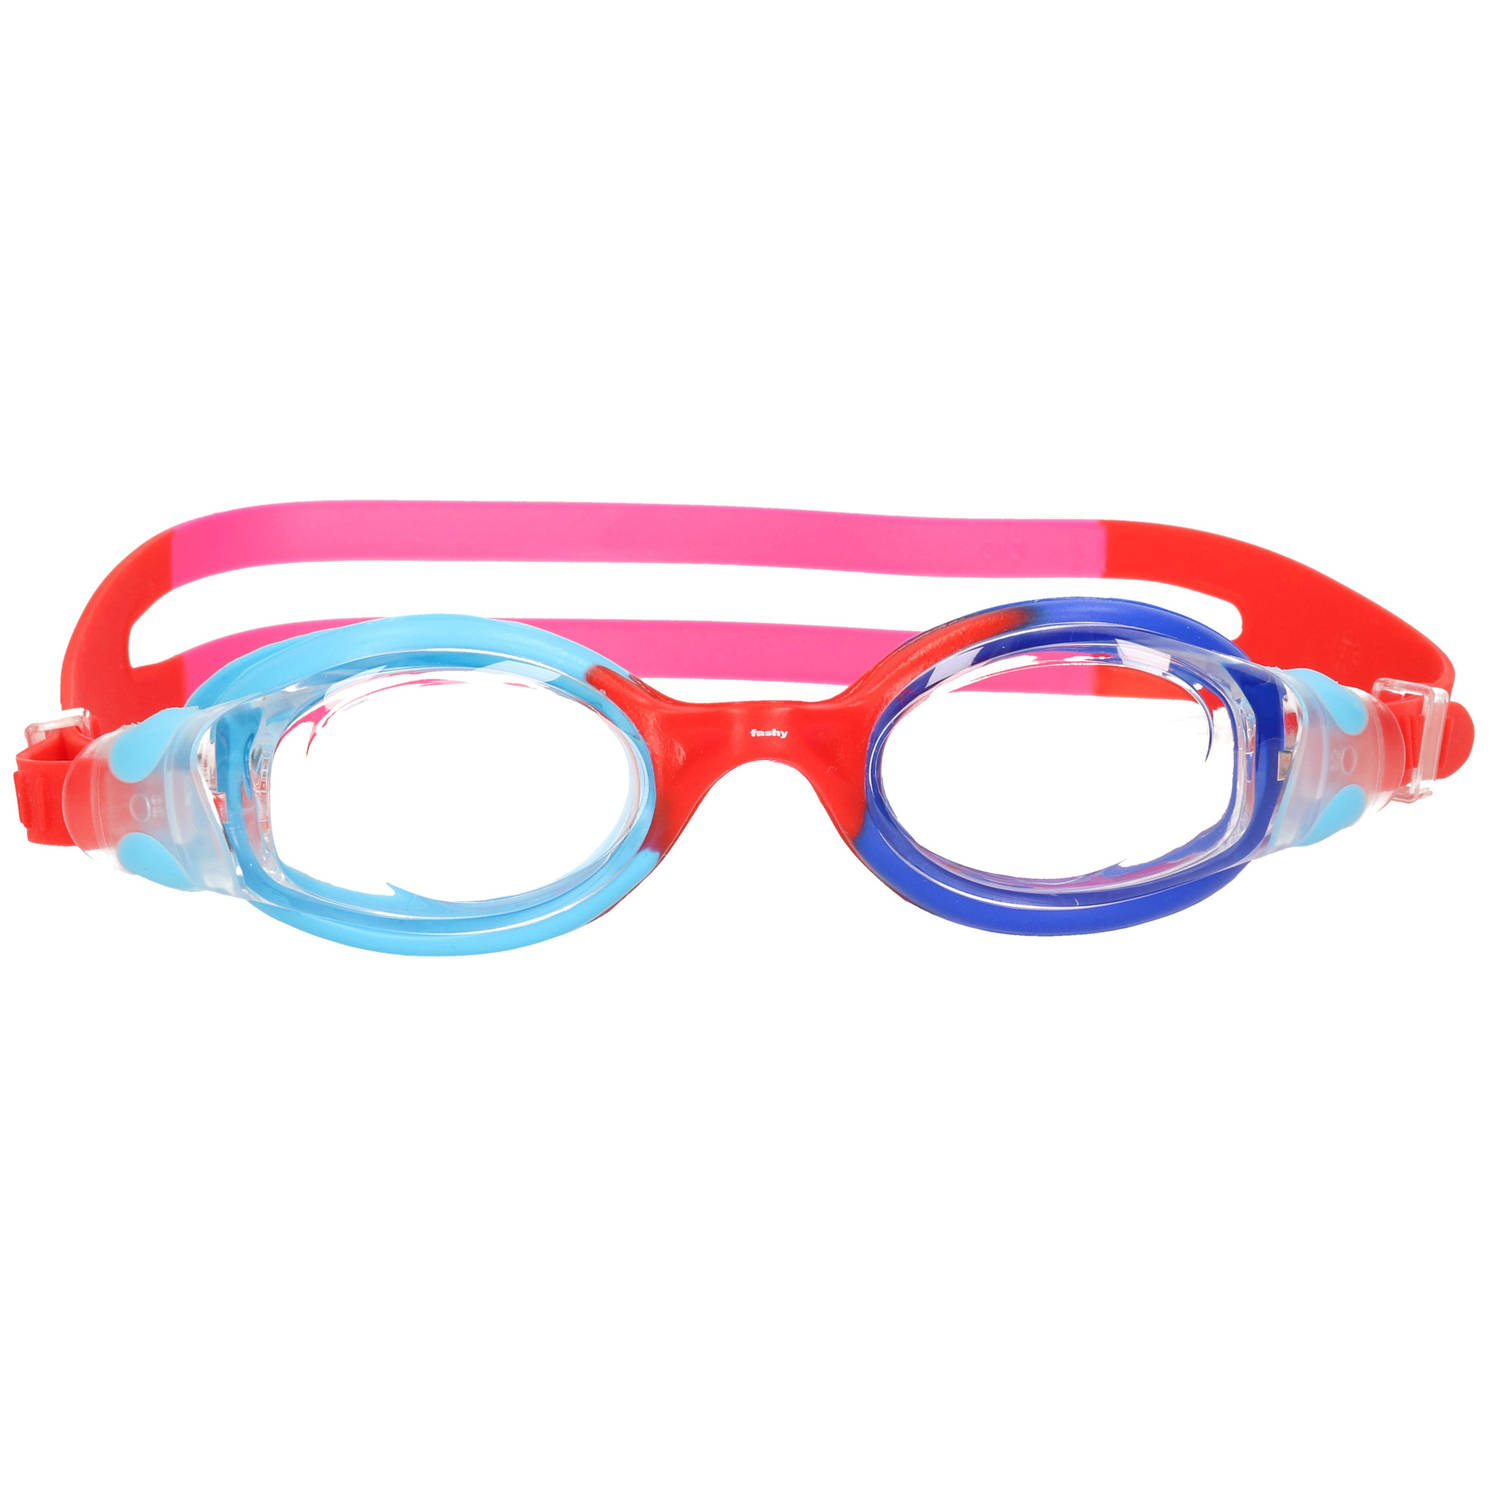 Gekleurde Kinder Zwembril 4-7 Jaar Rood-roze-blauw In Opbergdoosje Zwembrillen